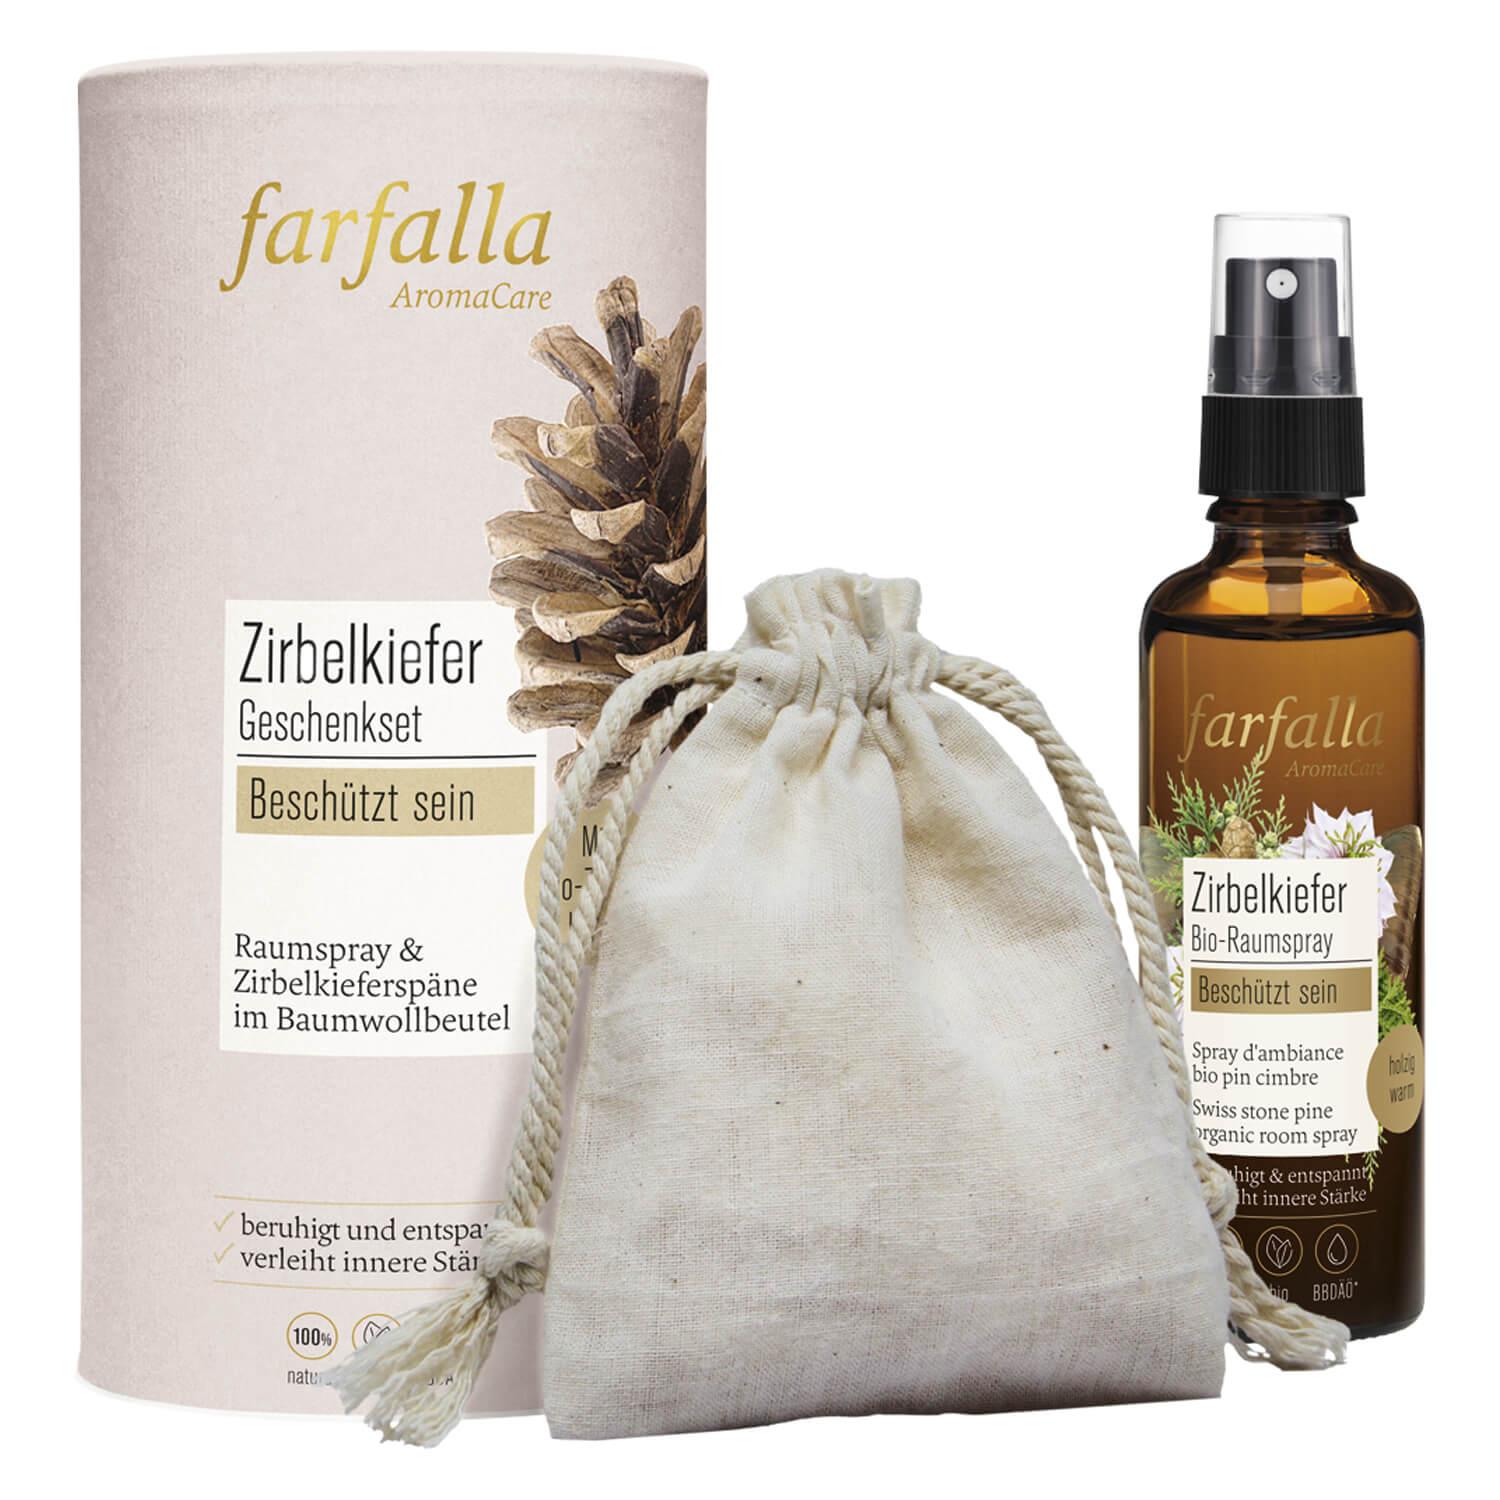 Farfalla Sets - Gift box Swiss stone pine